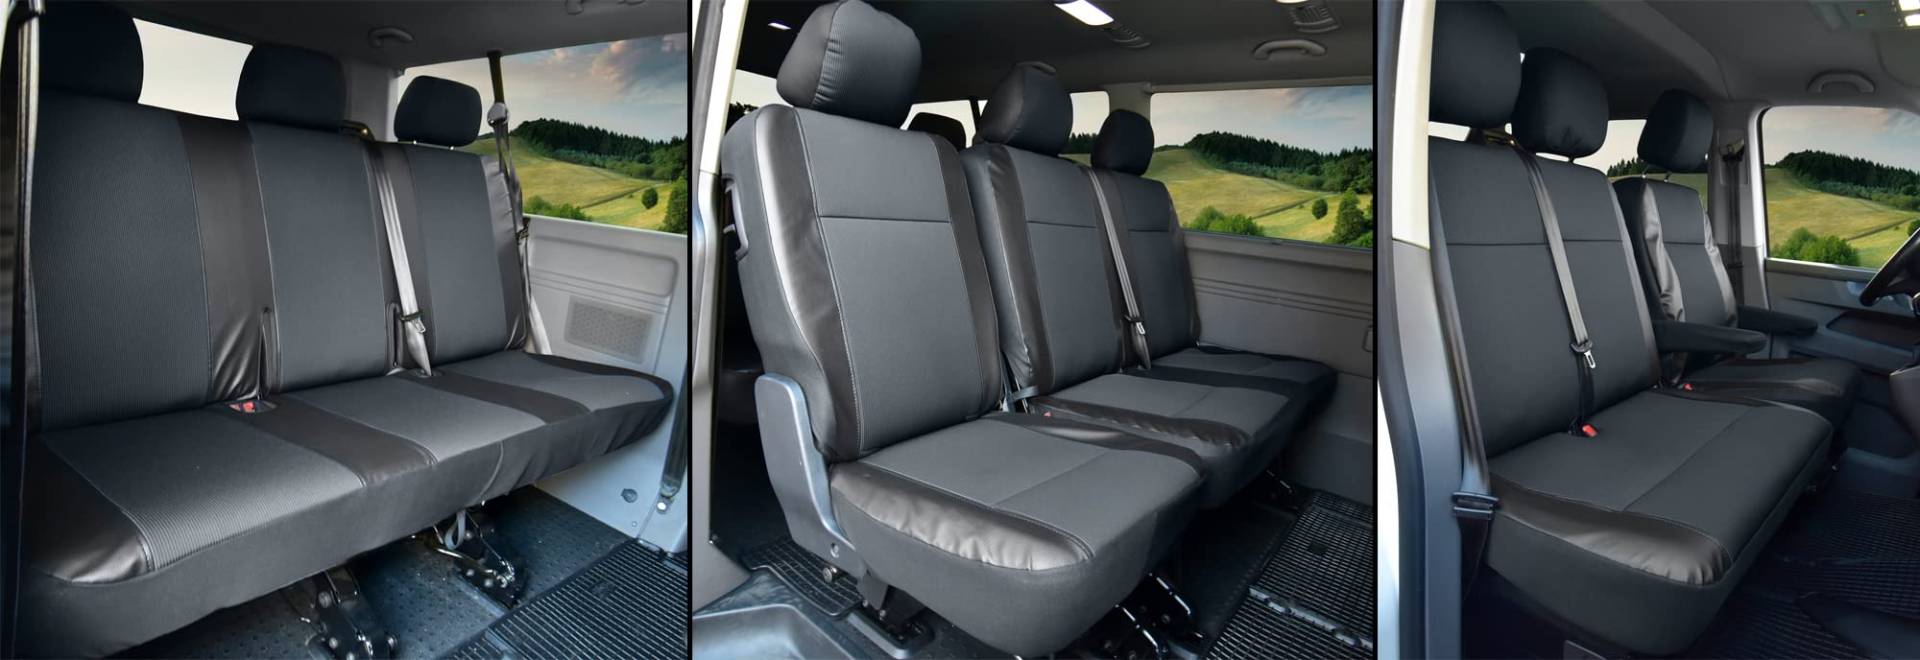 Sitzbezüge Kunstleder mit Stoff passgenau passend für VW T6 Transporter/Caravelle/Multivan ab 2015/19-9 Sitzer Viva von Z4L